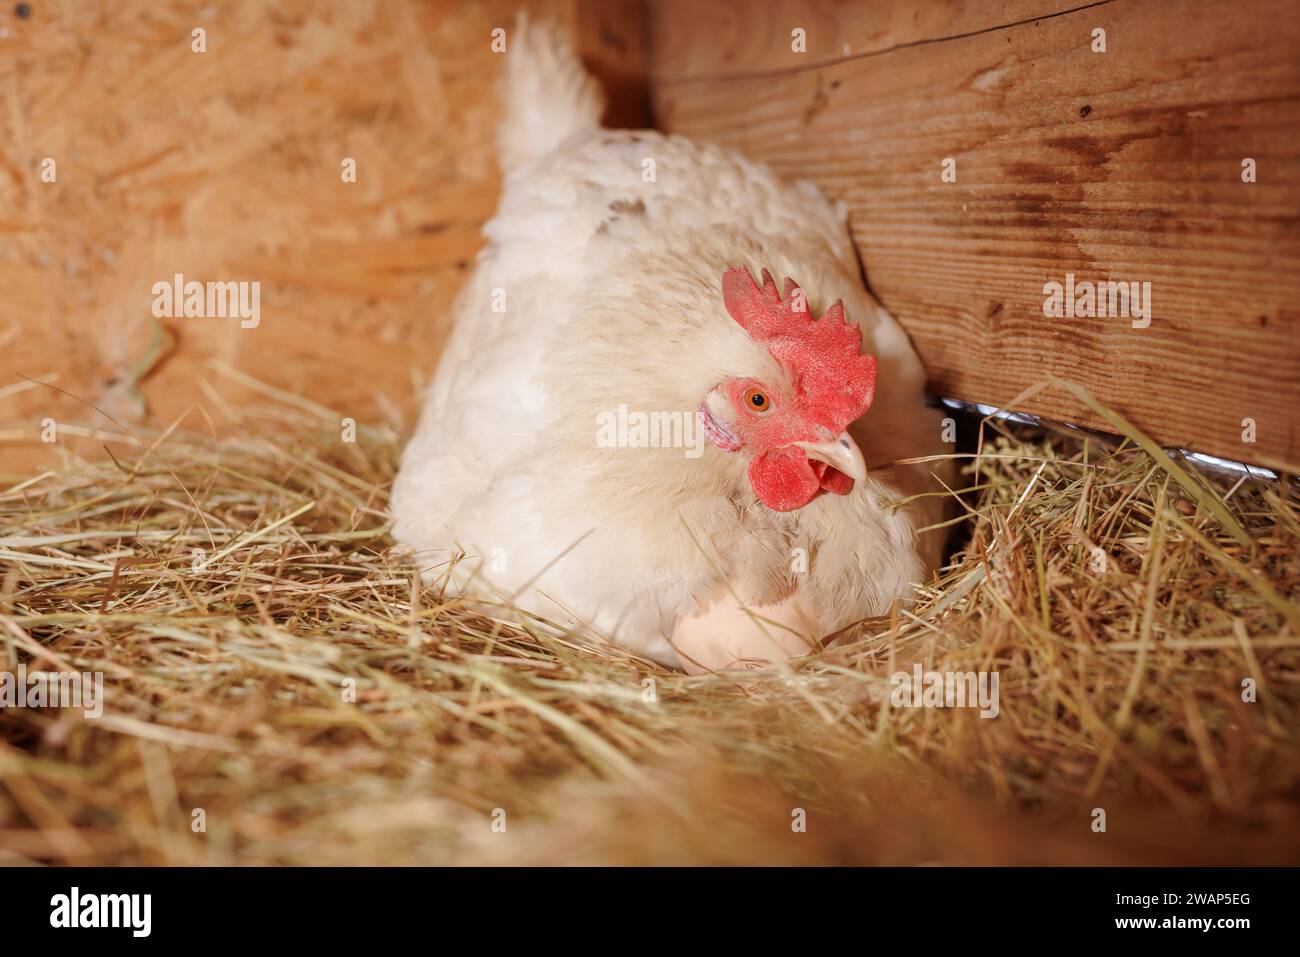 poule pondeuse rouge couvant des œufs dans un nid de paille à l'intérieur d'un poulailler en bois, ferme de poulets fermiers Banque D'Images